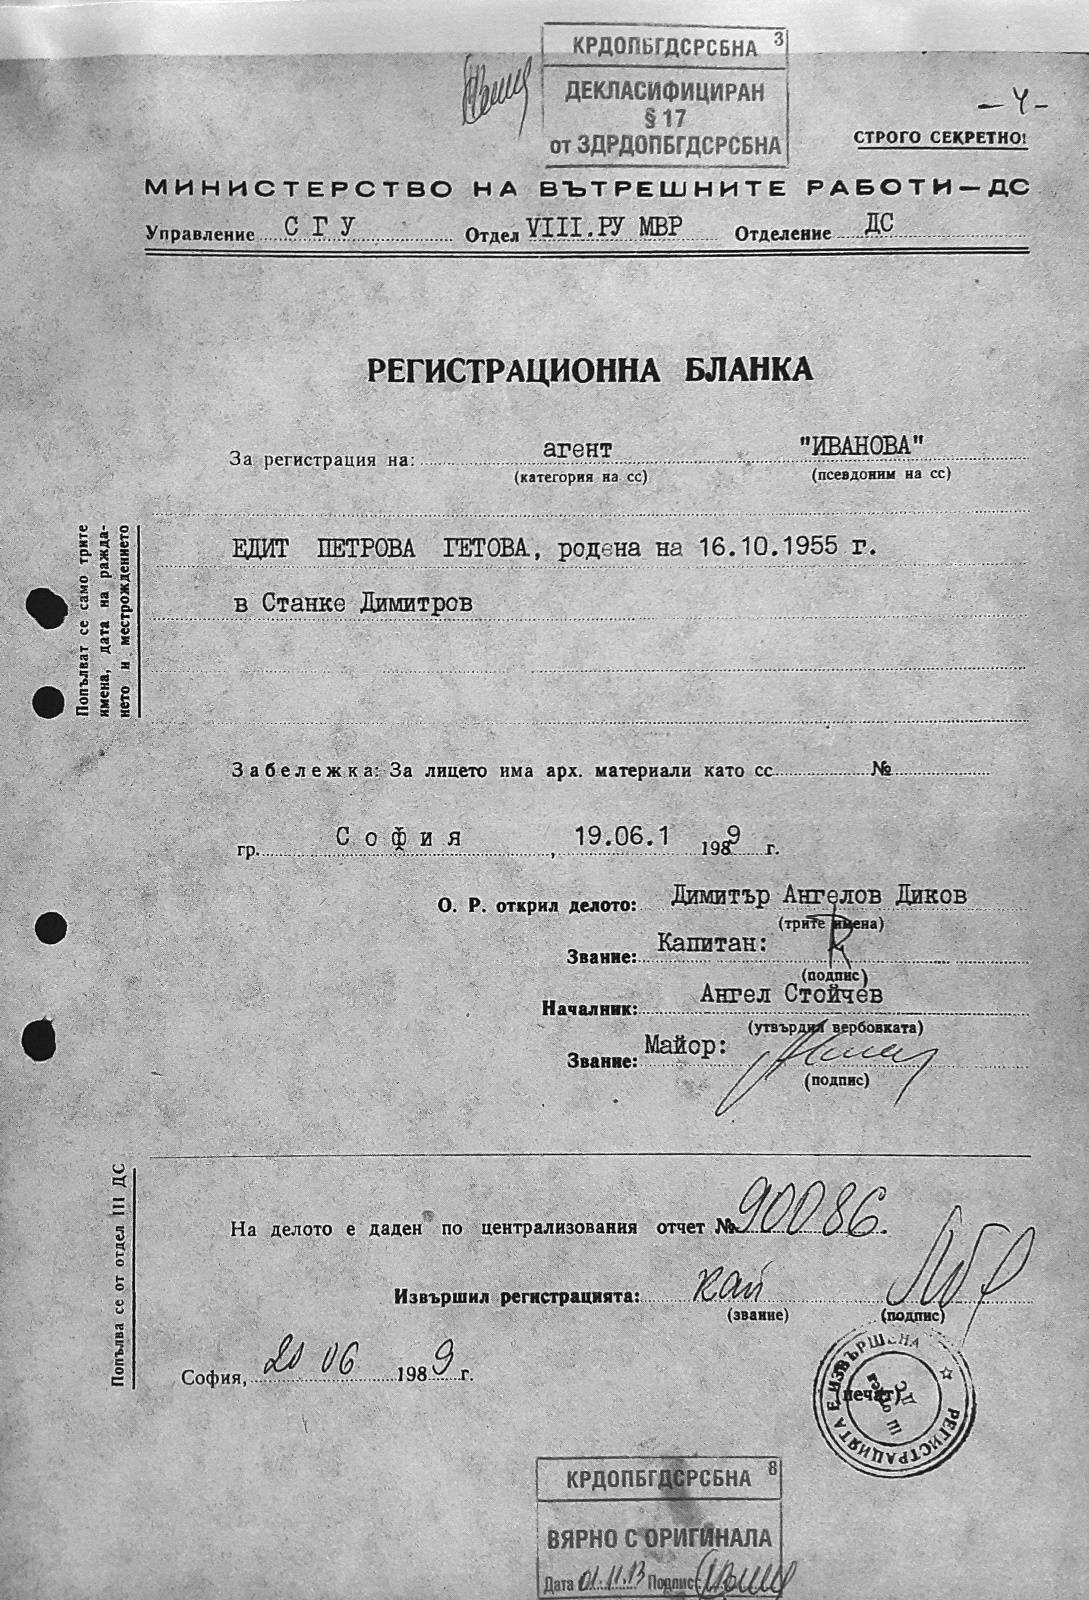 Регистрационният картон за вербовката на Едит Гетова като агент Иванова